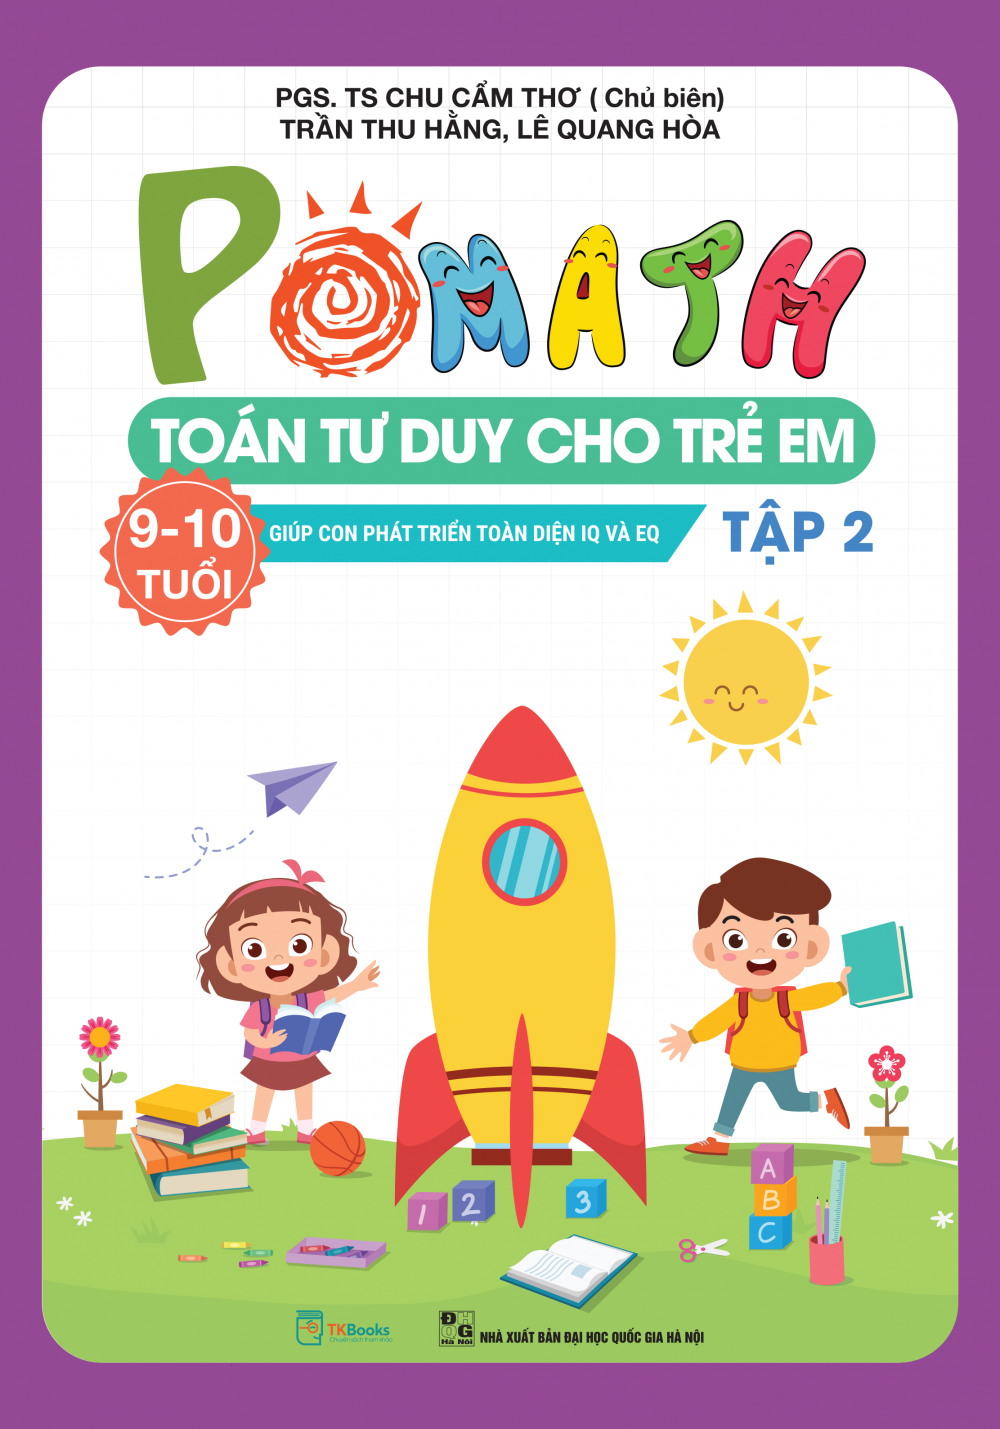 POMath – Toán tư duy cho trẻ em 9 – 10 tuổi - Tập 2